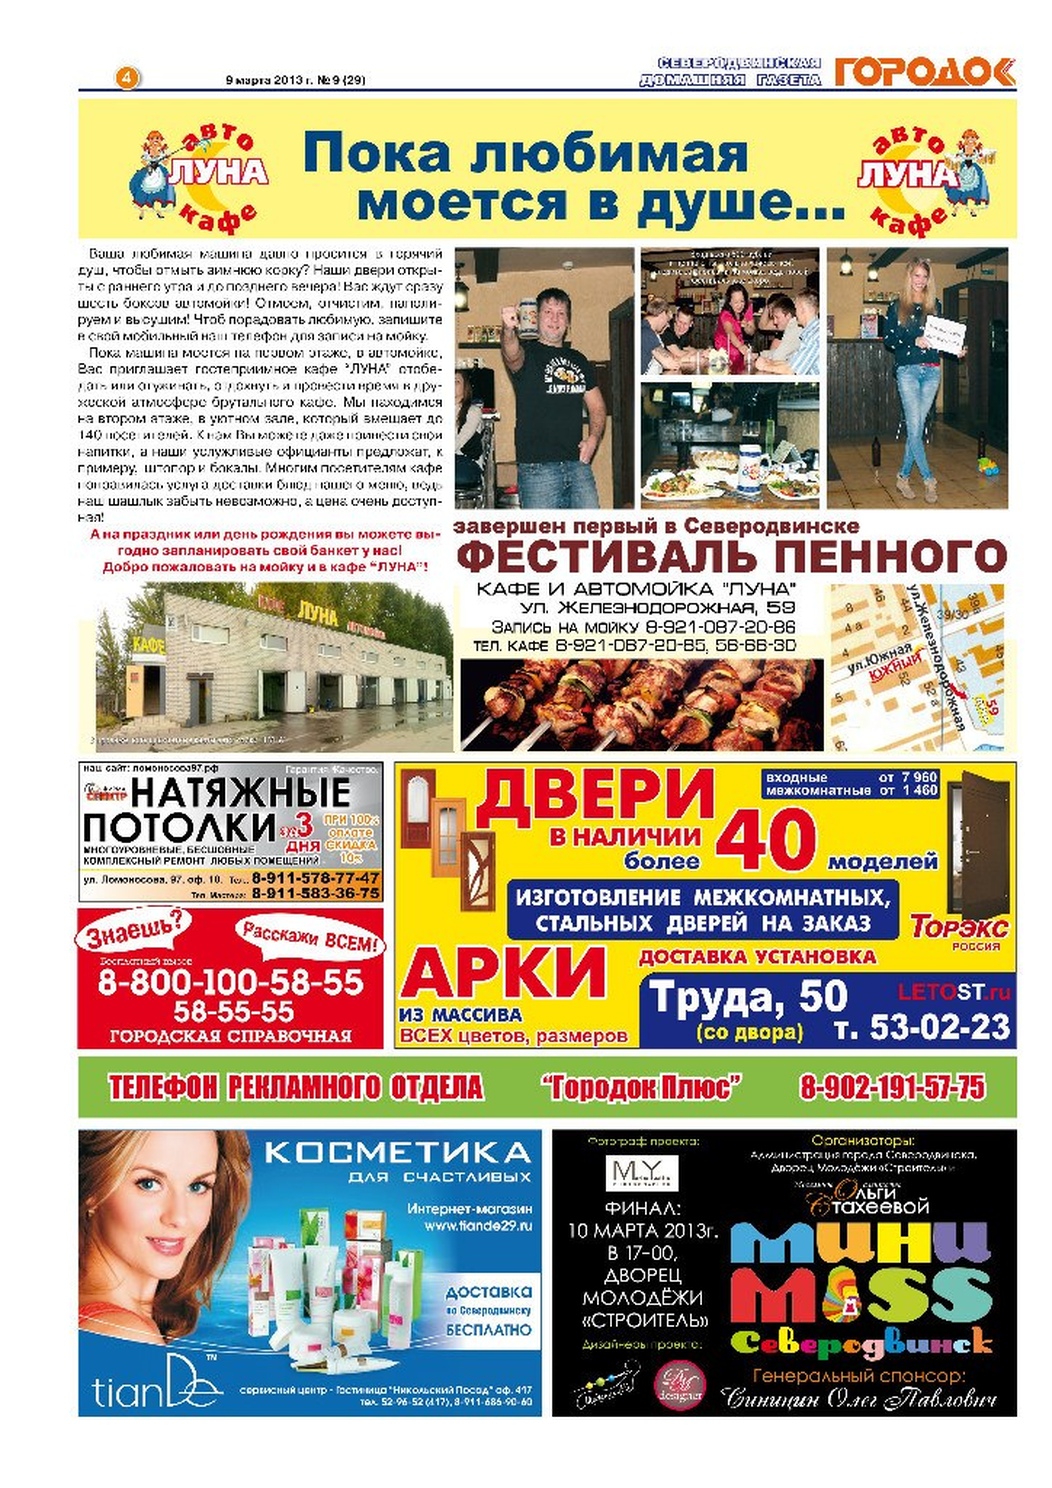 Городок плюс, выпуск номер 9 от 09 марта 2013 года, страница 4.